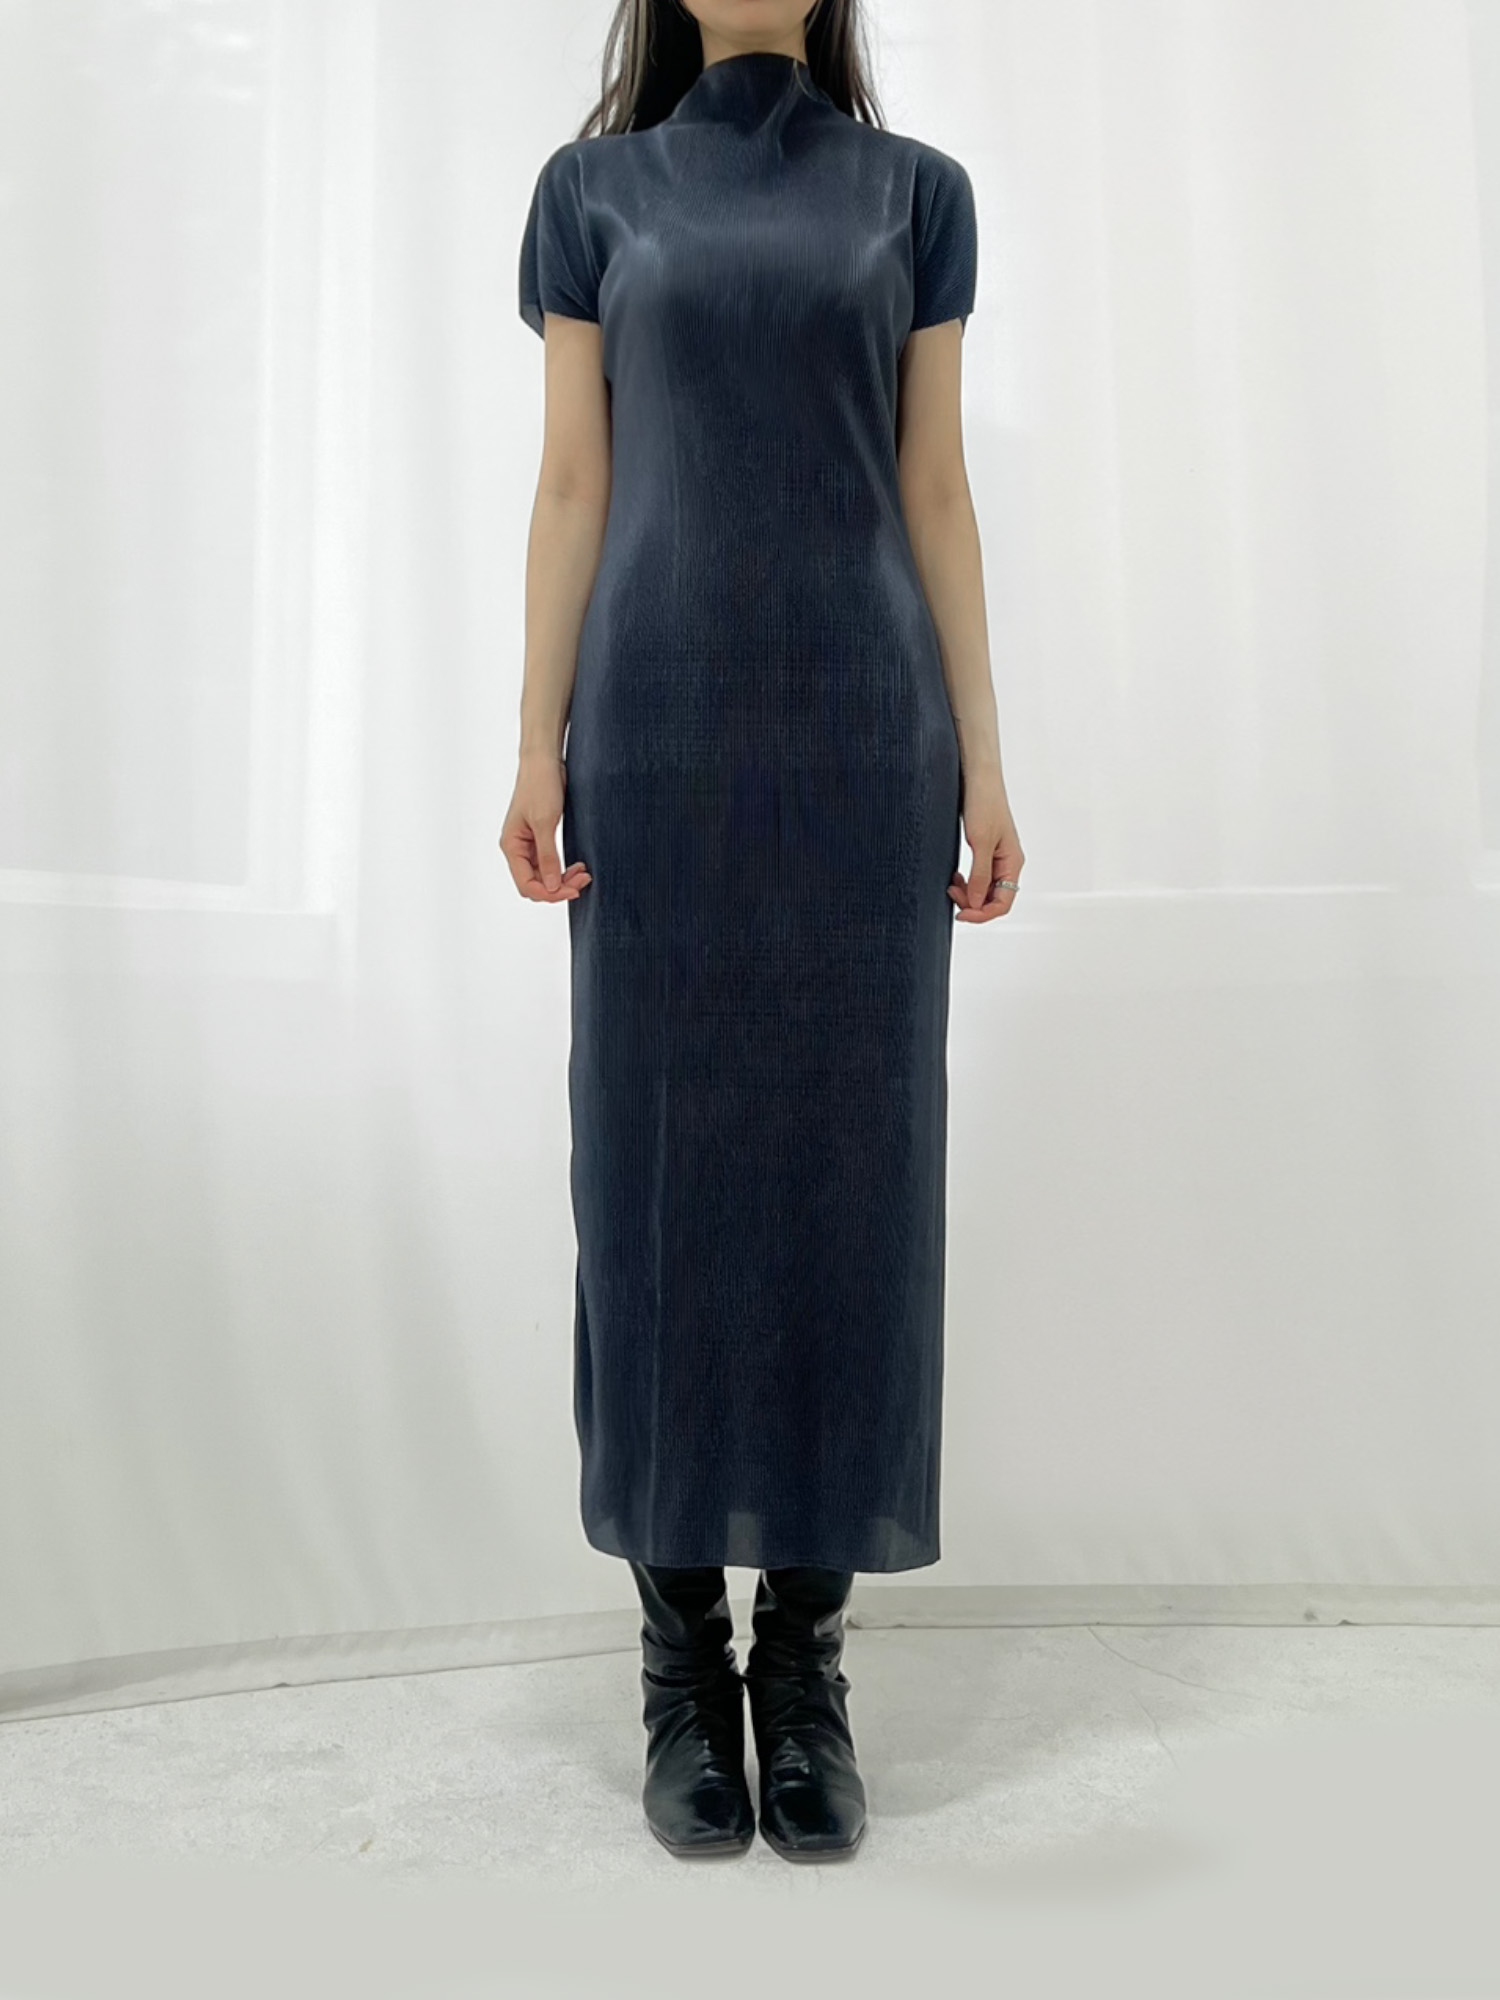 pleats dressy long dress _ blue gray